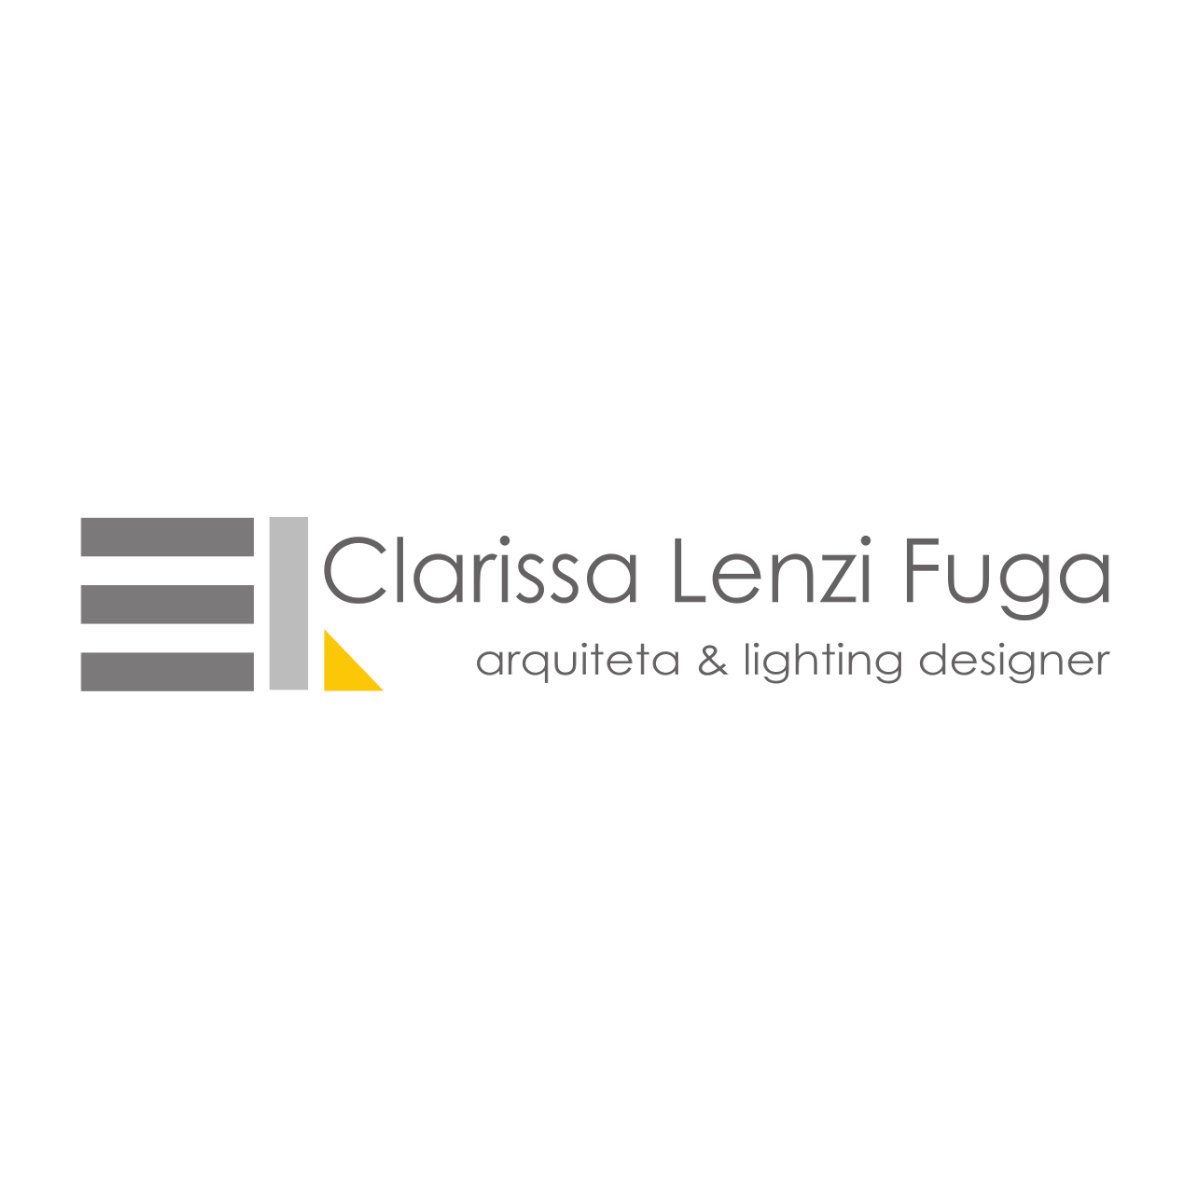 Clarissa Lenzi Fuga